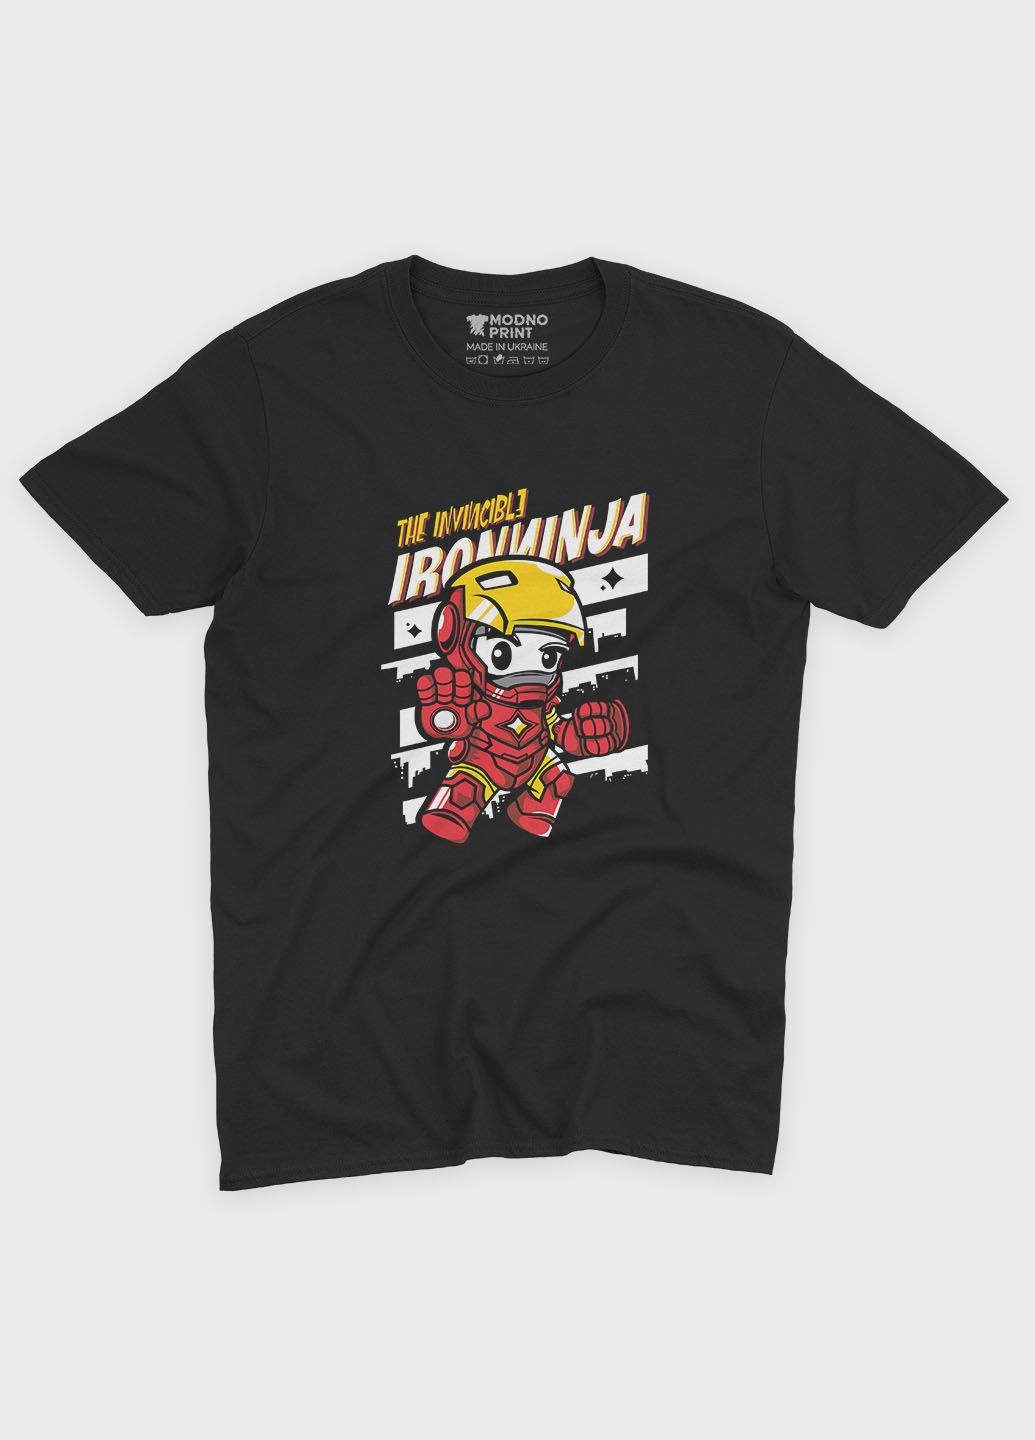 Чорна демісезонна футболка для дівчинки з принтом супергероя - залізна людина (ts001-1-gl-006-016-009-g) Modno